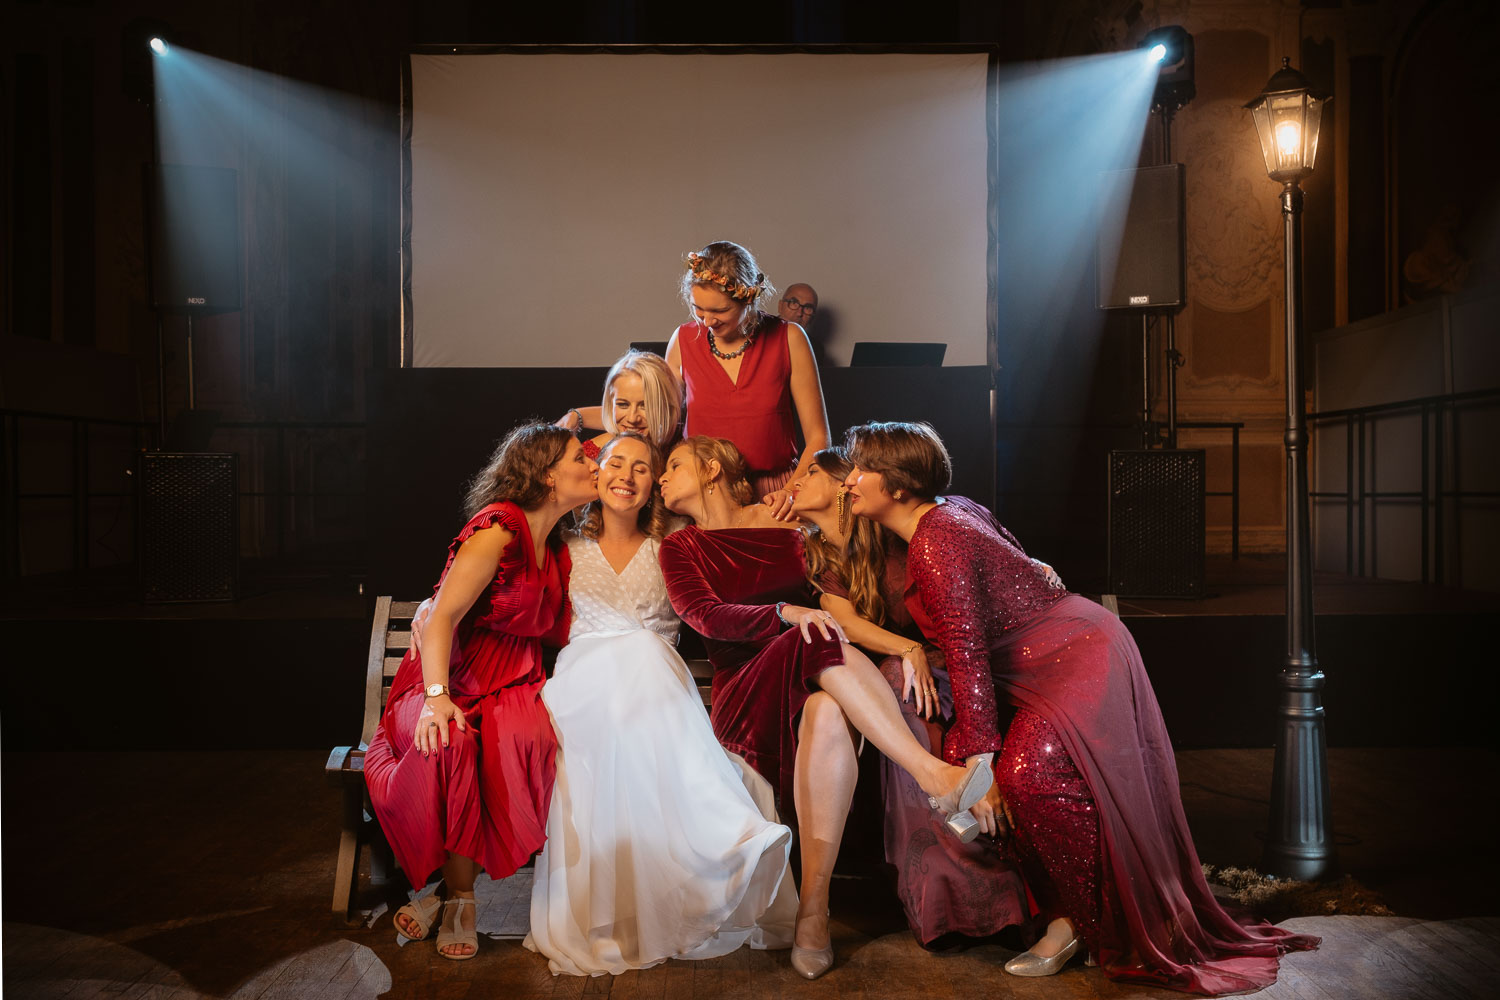 Reportage photo lifestyle d’un mariage d’automne sur le thème de la comédie musicale La La Land